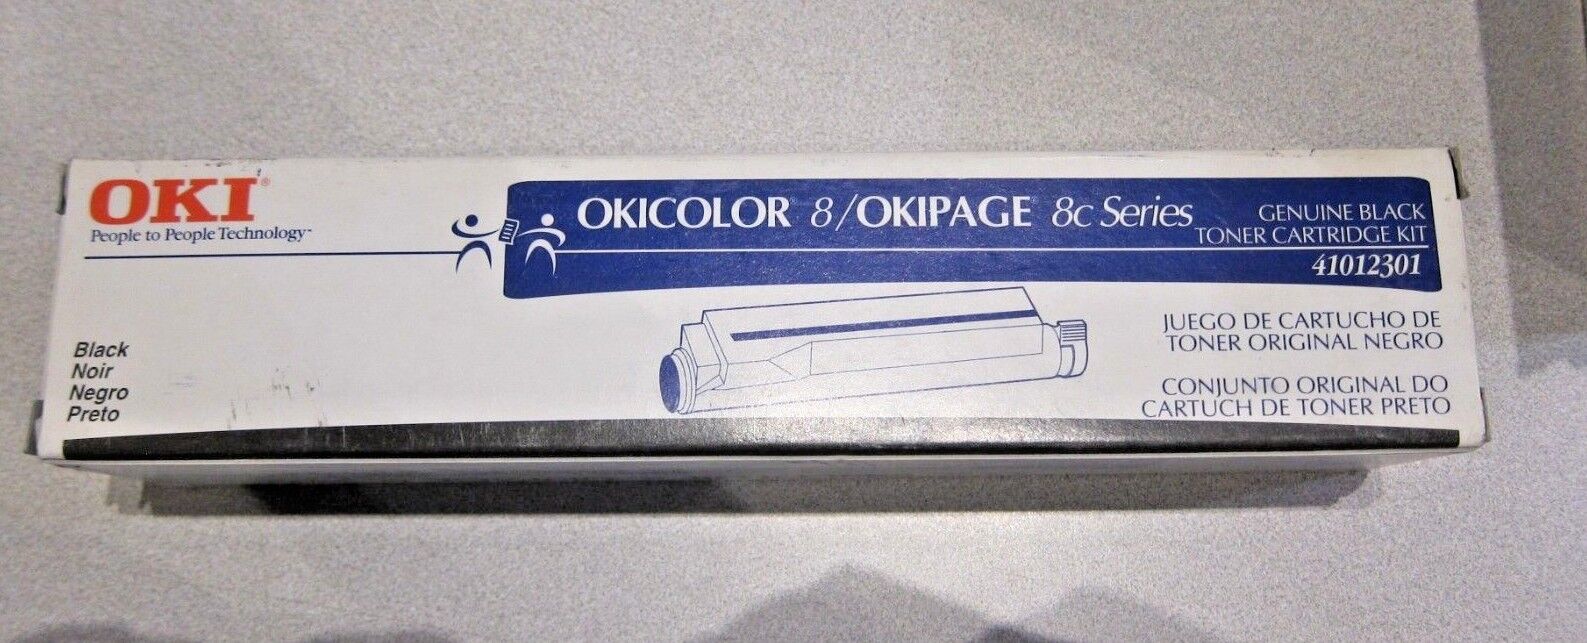 OKI OKICOLOR 8/OKIPAGE 8c Series  41012301 Black Toner Cartridge Kit C1  New 